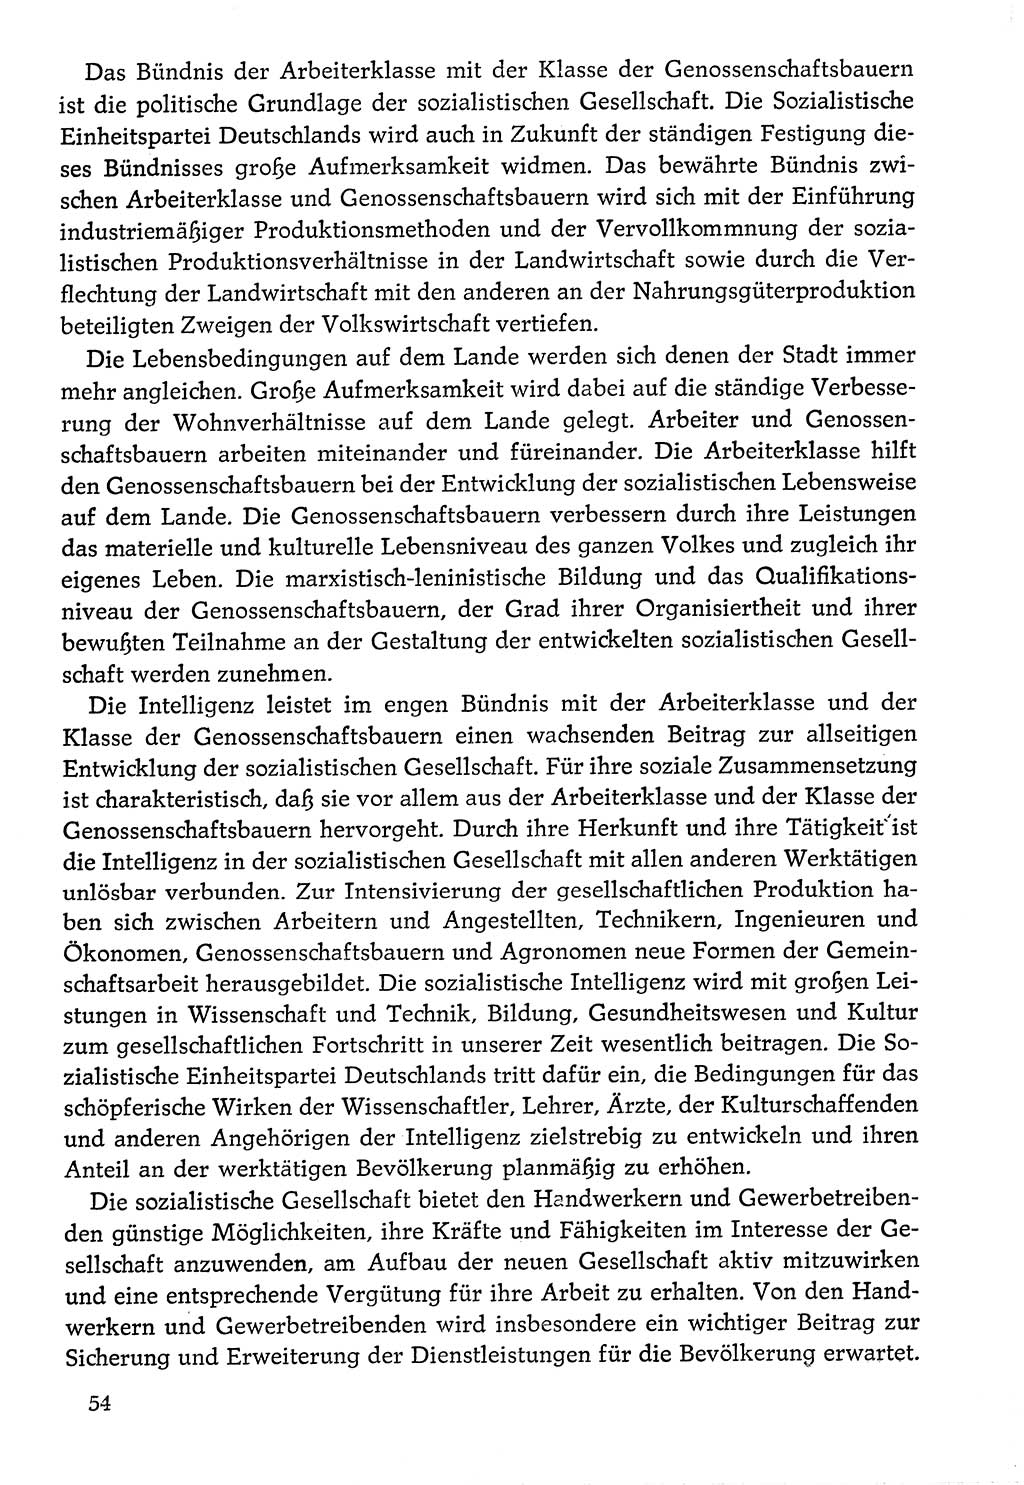 Dokumente der Sozialistischen Einheitspartei Deutschlands (SED) [Deutsche Demokratische Republik (DDR)] 1976-1977, Seite 54 (Dok. SED DDR 1976-1977, S. 54)